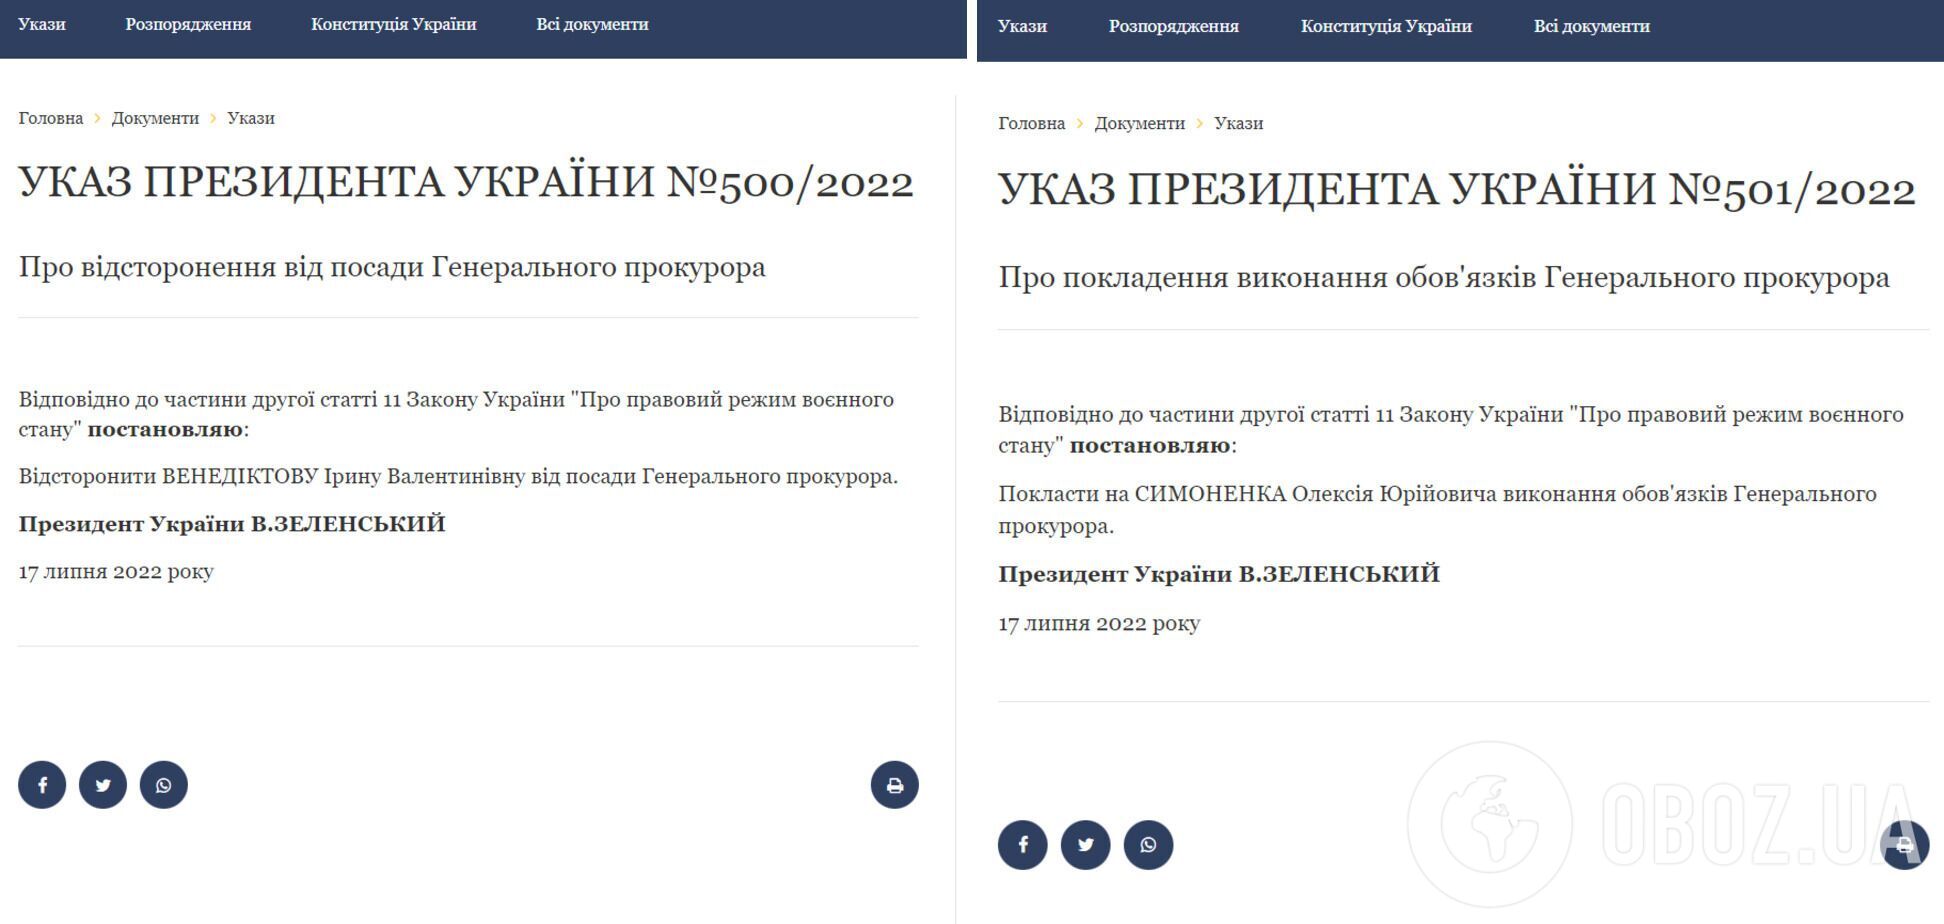 Венедиктова уволена, вместо нее и.о. генпрокурора назначен Симоненко.